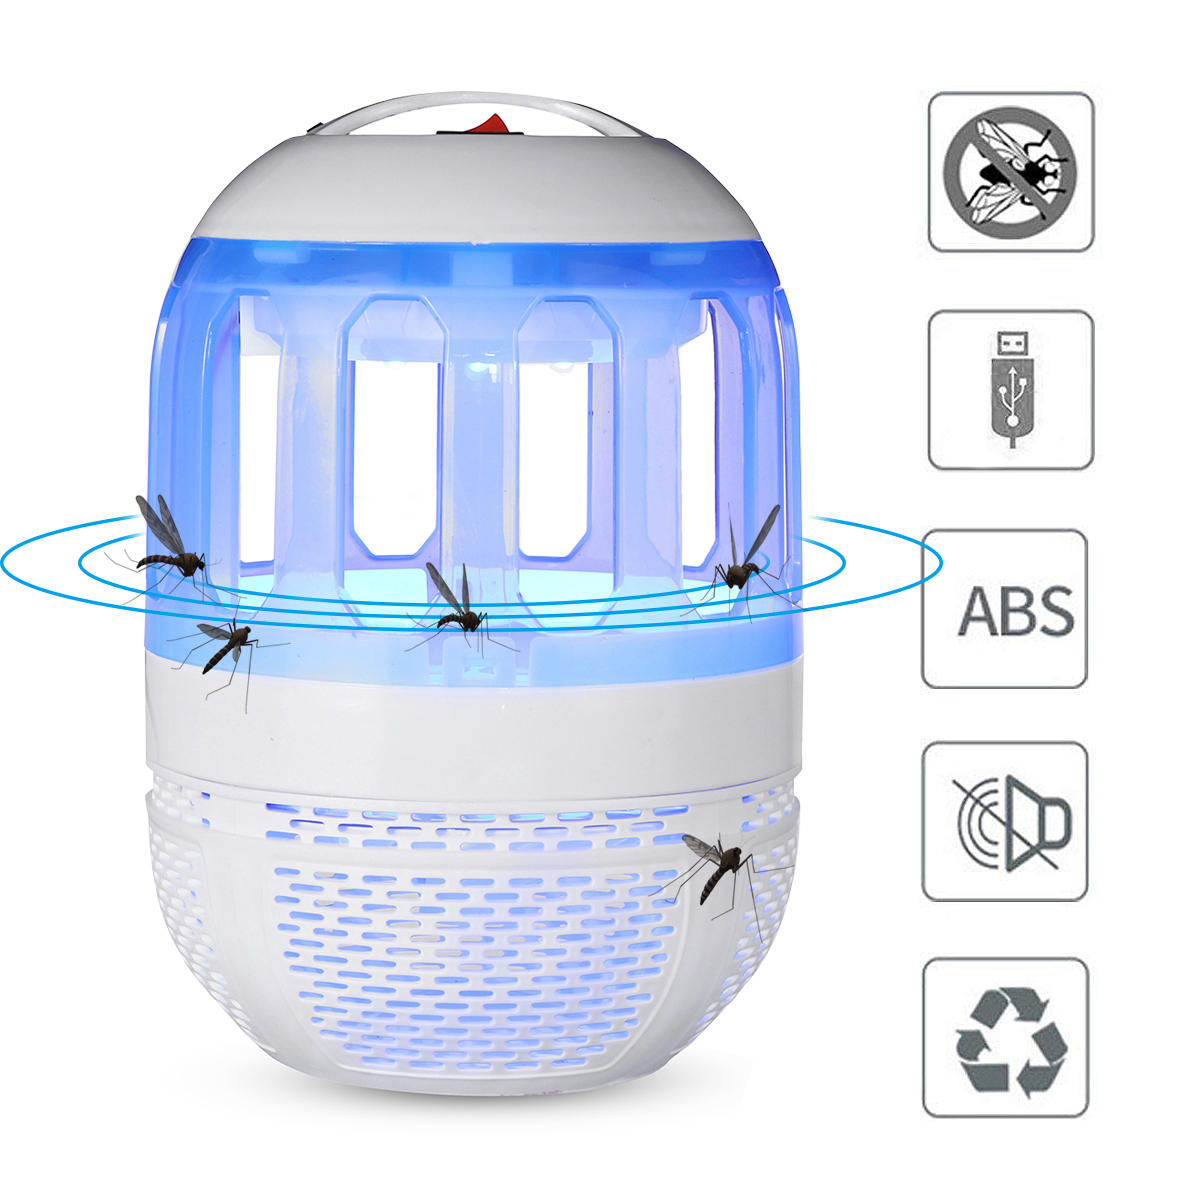 2W Электронный убийца для москитов Лампа USB-убийца для насекомых Лампа Лампа для борьбы с вредителями для Кемпинг